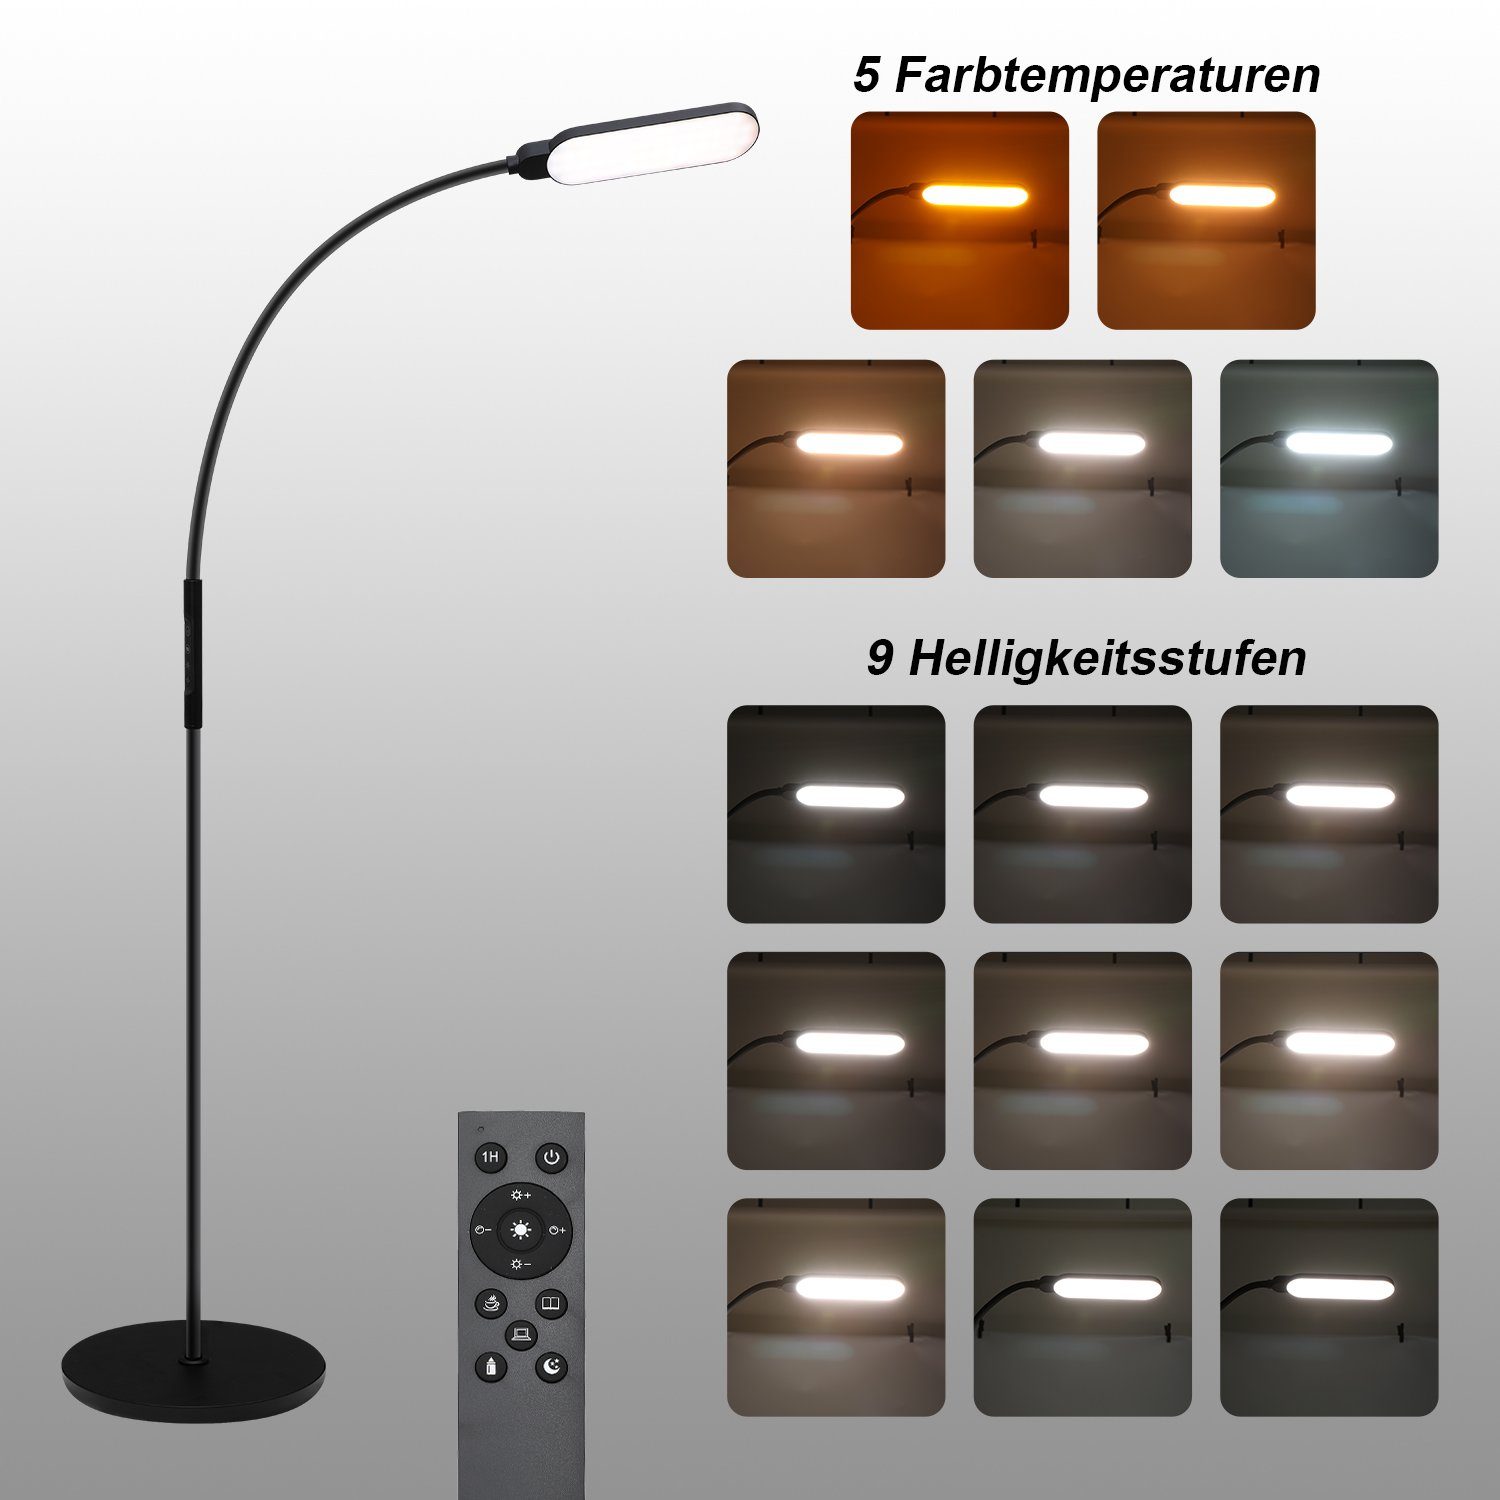 Vicbuy Stehlampe, LED Stehleuchte Helligkeiten 5 Leselampe Farbtemperaturen/9